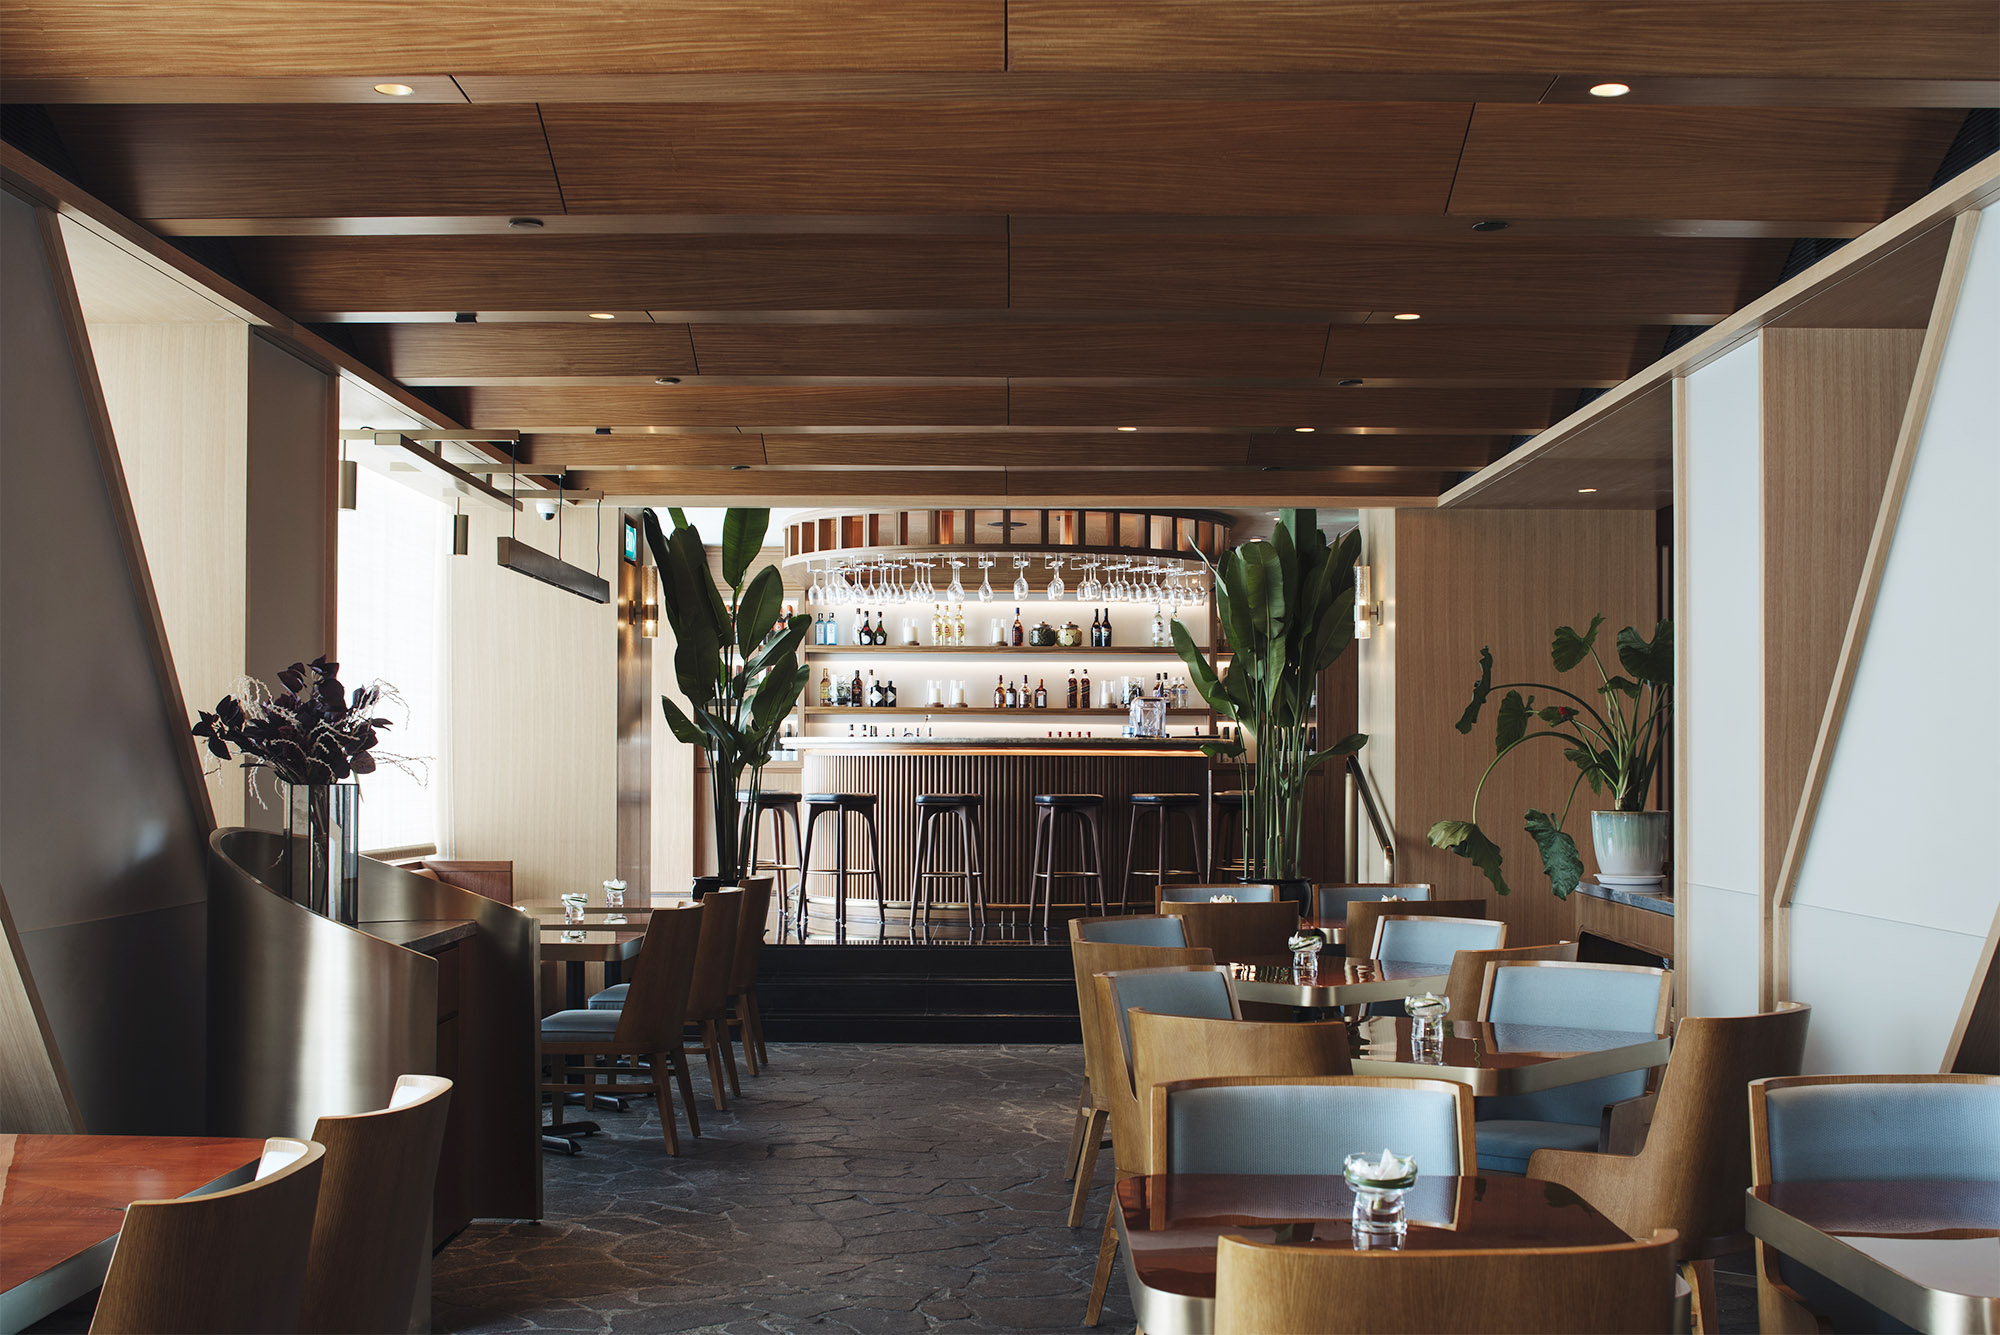 Conrad Hotel Pool Lounge & Spa – Brewin Design Office